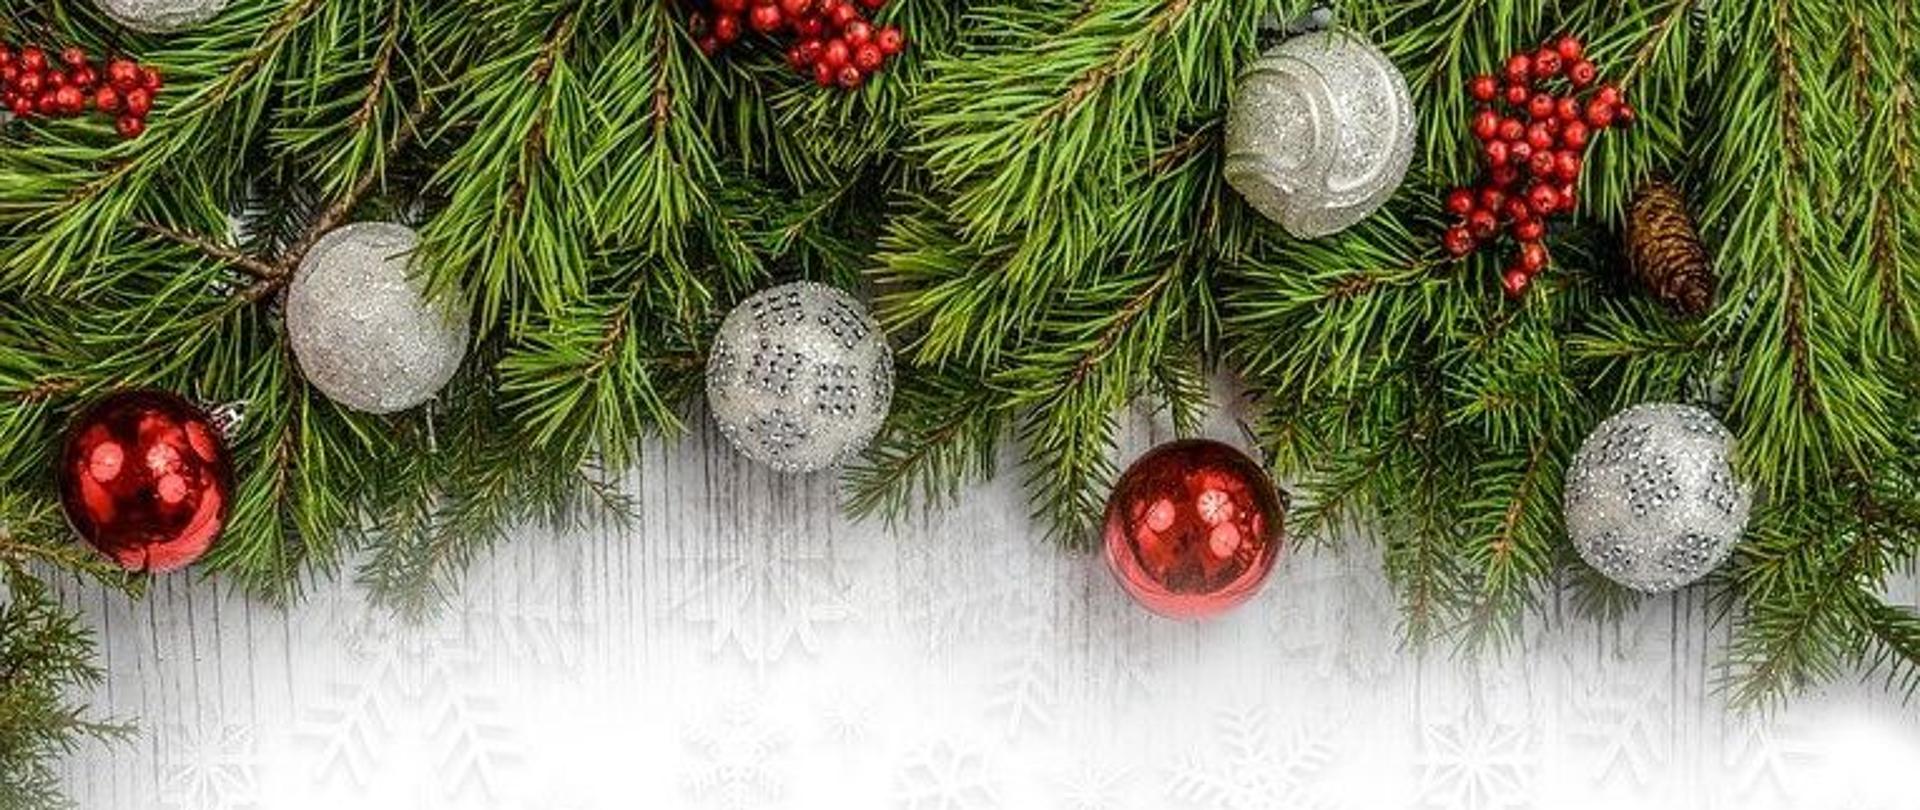 Życzenia Komendanta Powiatowego PSP w Mikołowie z okazji Świąt Bożego Narodzenia